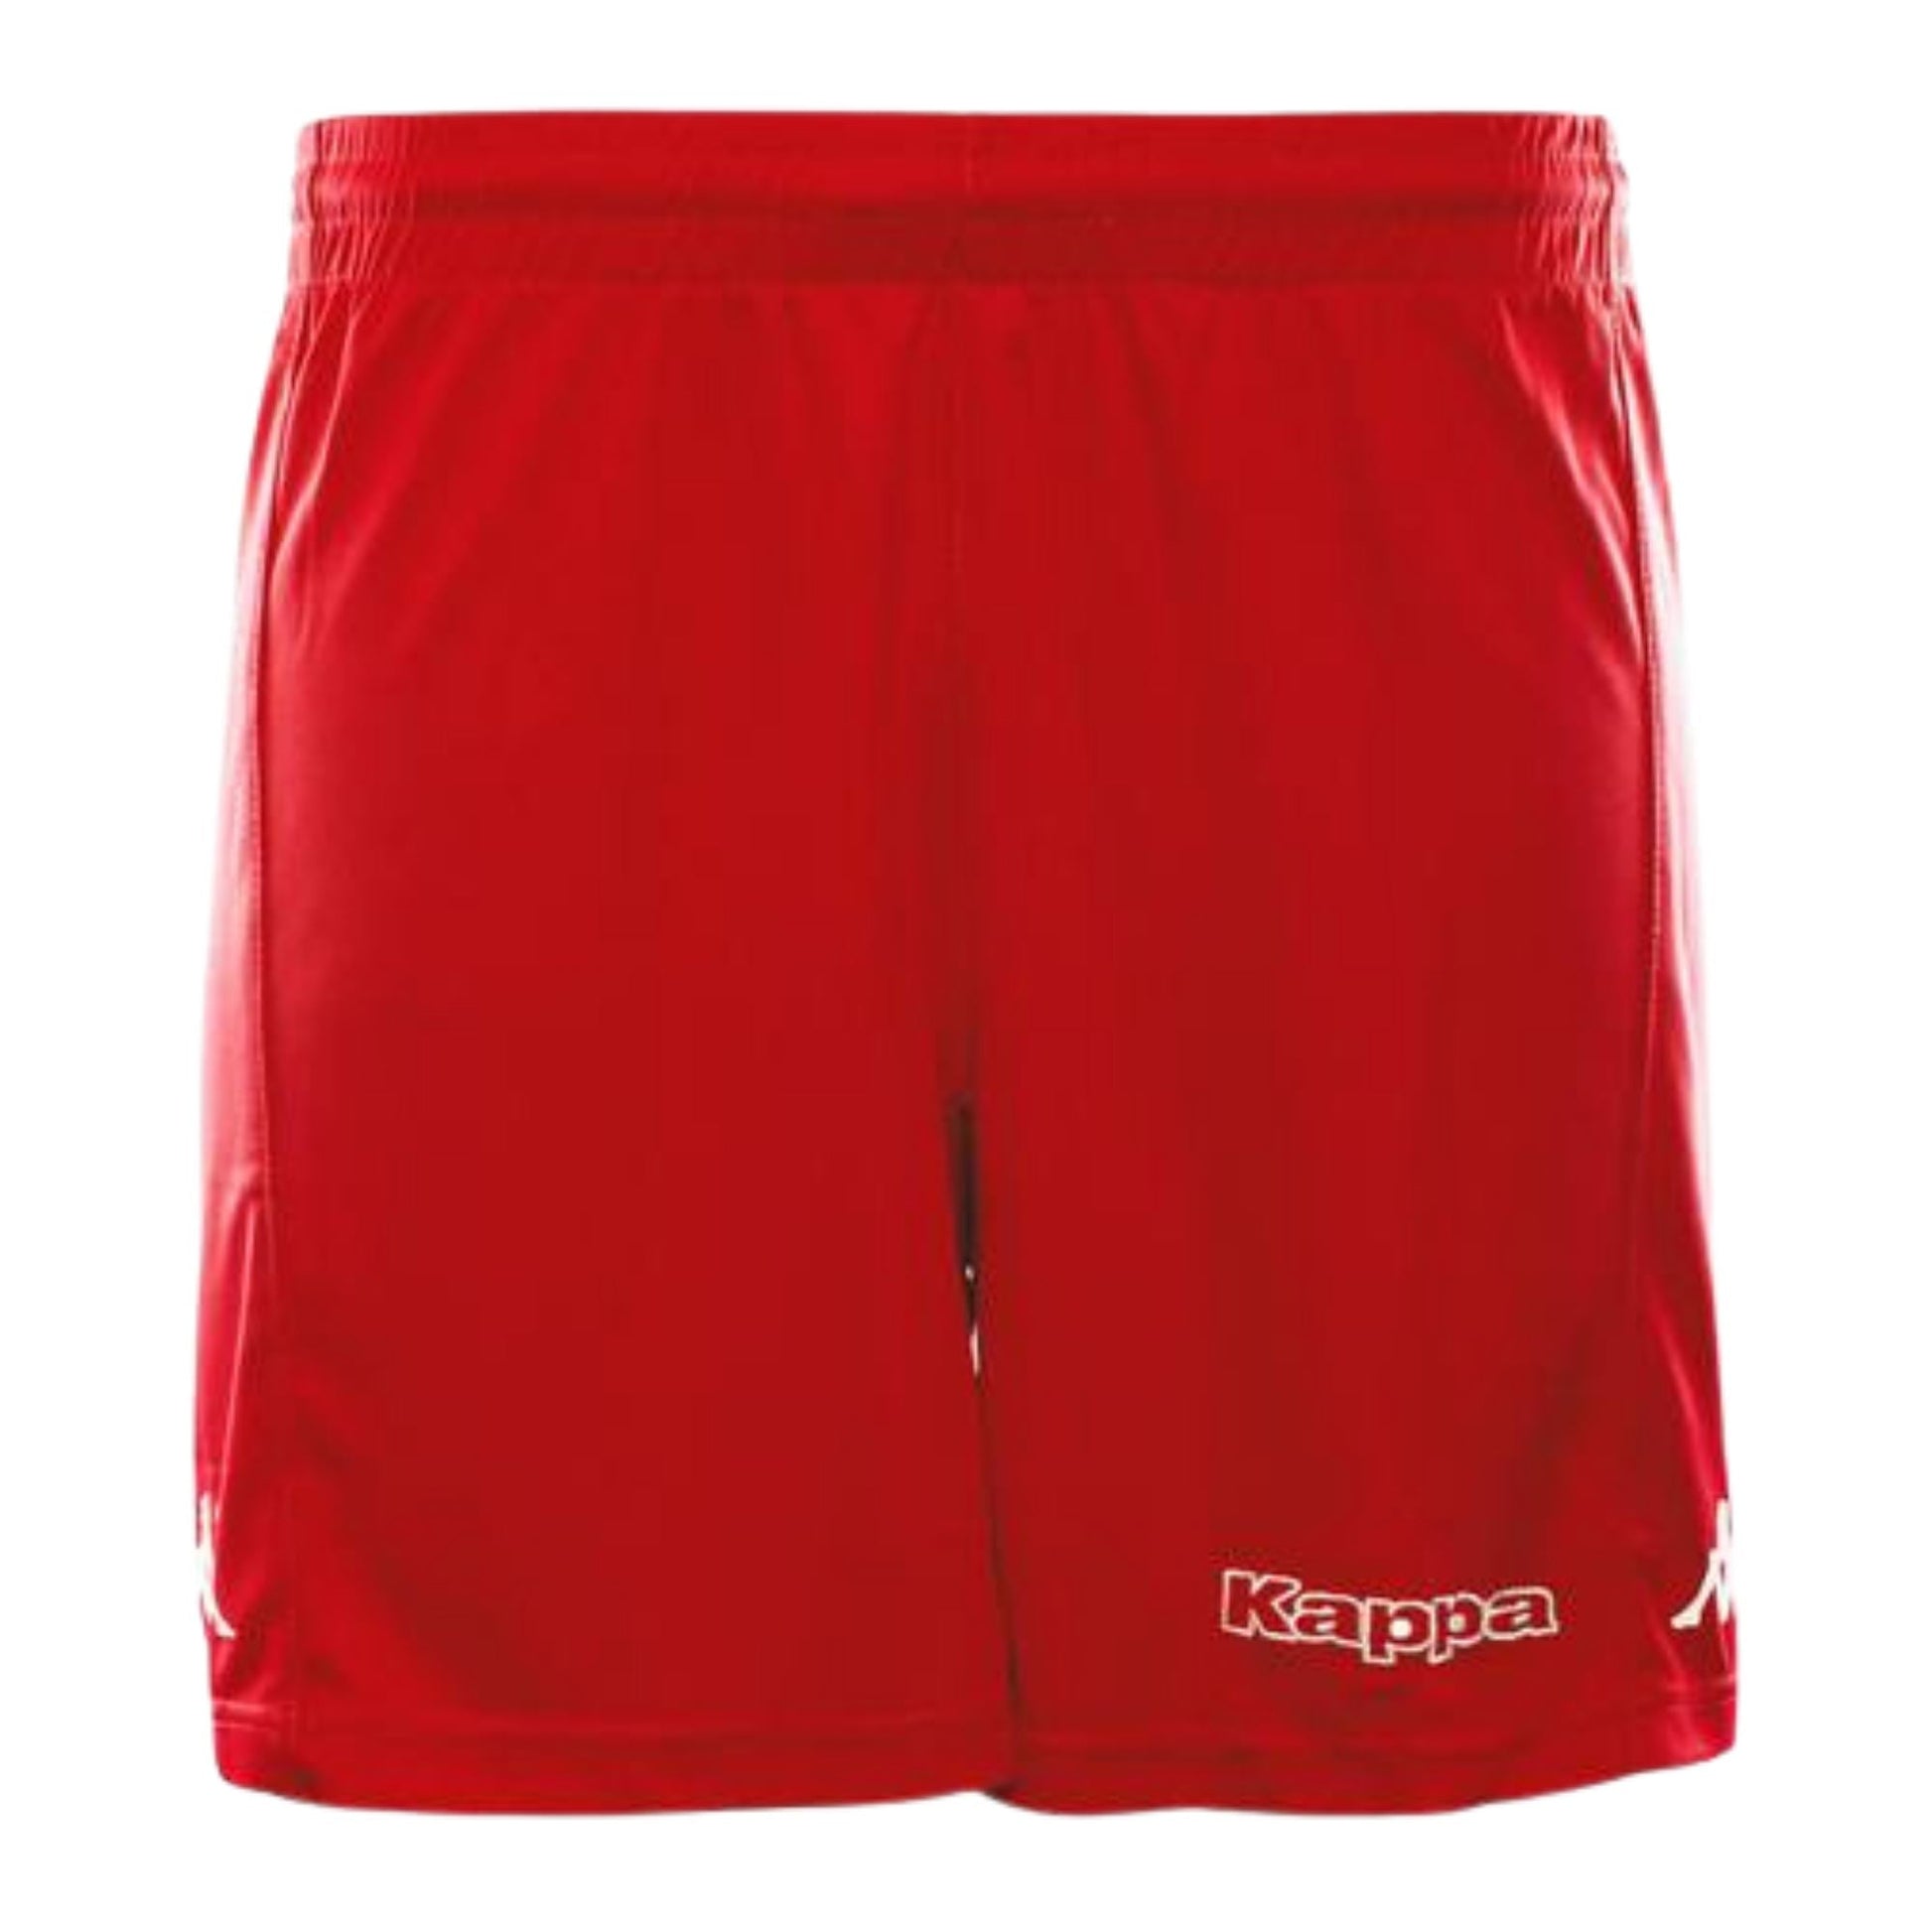 Kappa Unisex Shorts Shorts KAPPA XS RED 